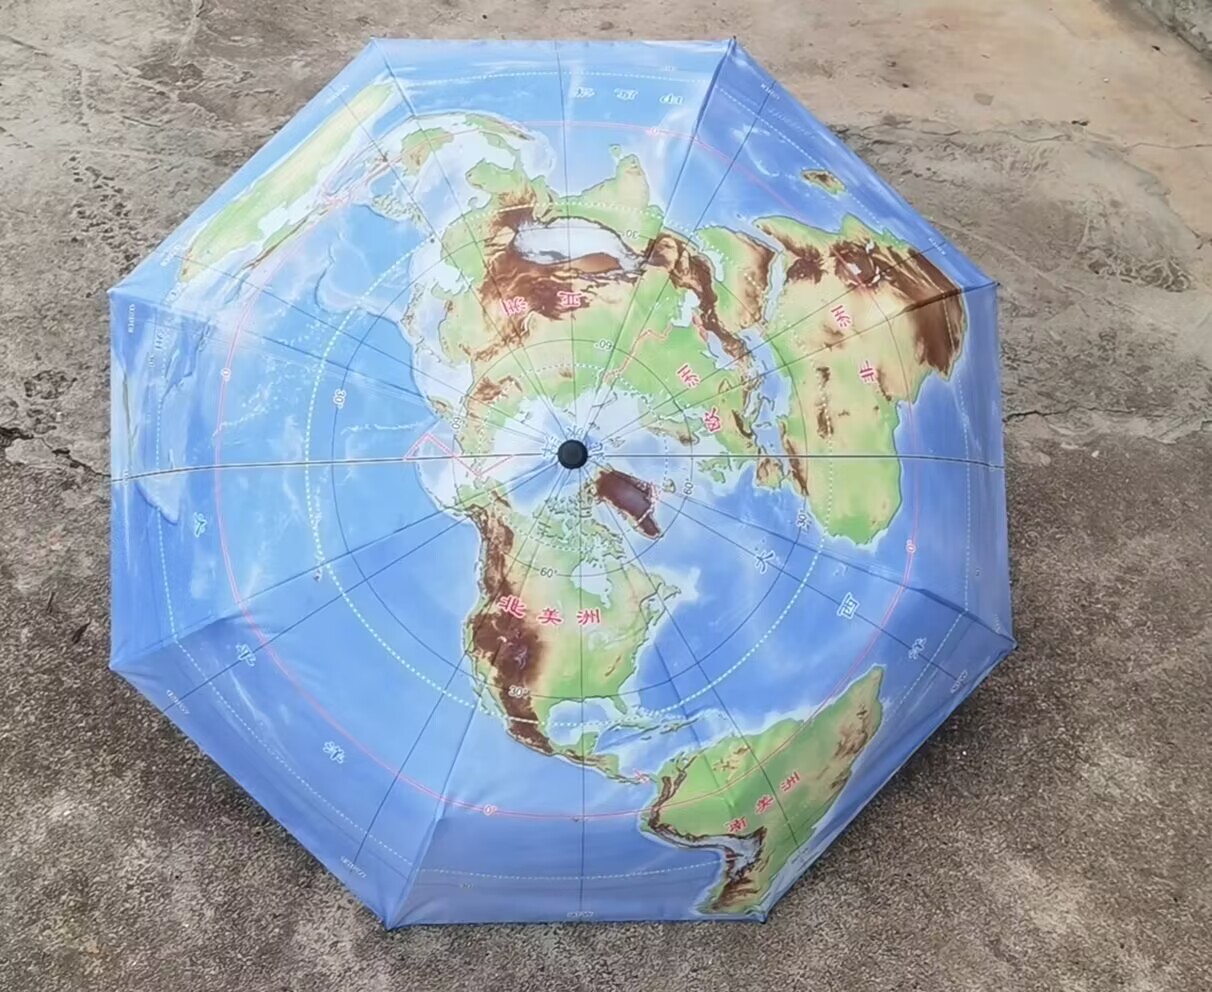 新地图伞三折叠晴雨伞展示别致北极为中心50°S以北海陆雨季大